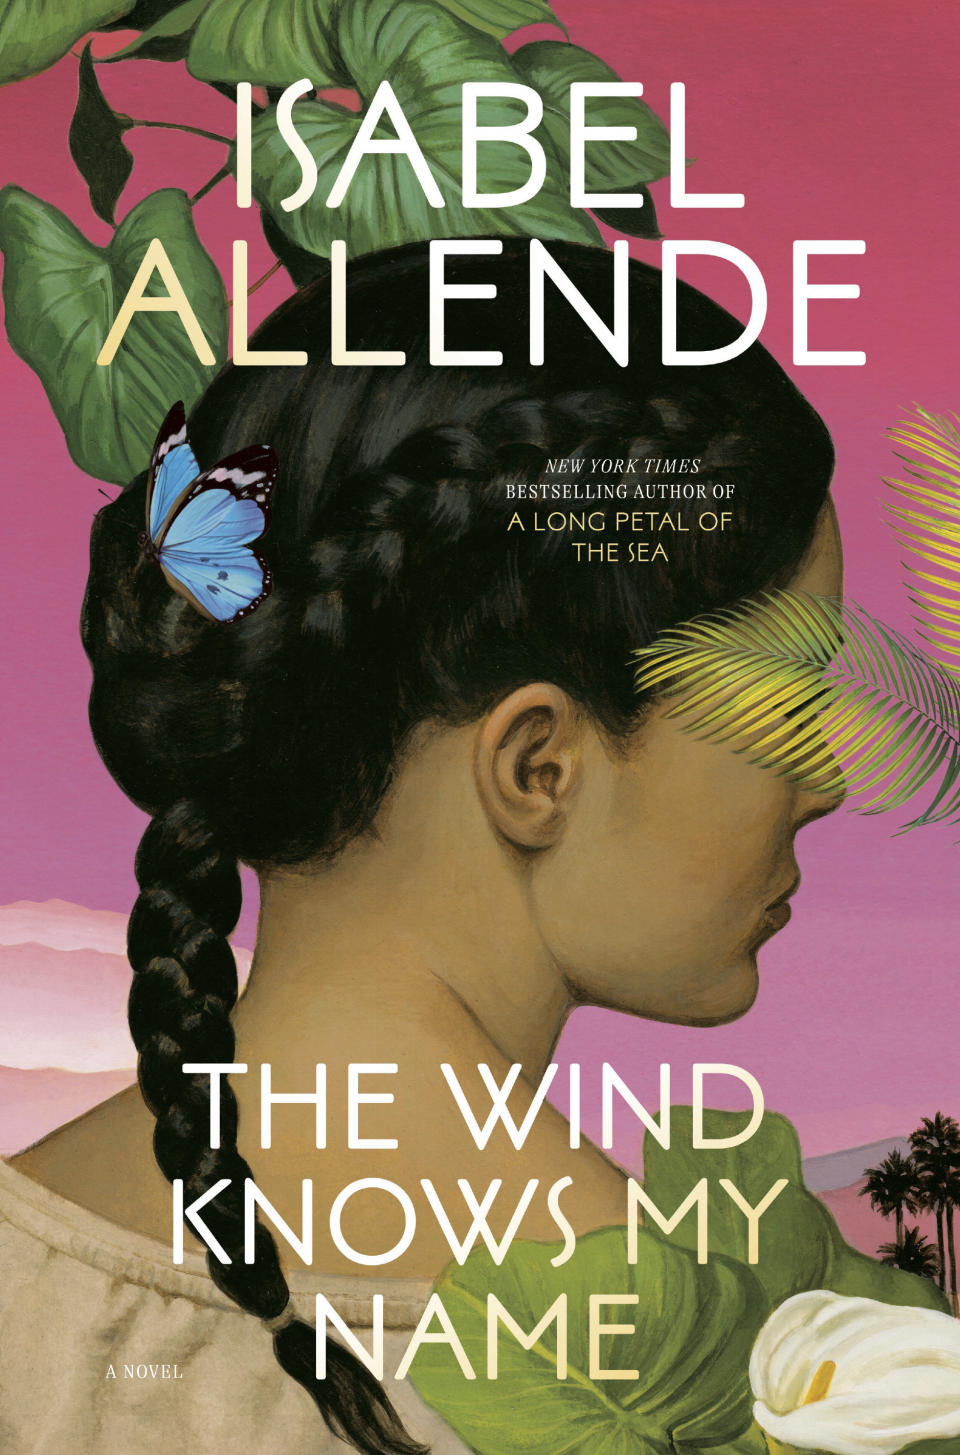 En esta portada proporcioanda por Ballantine "The Wind Knows My Name" (“El viento conoce mi nombre”) de Isabel Allende. (Ballantine vía AP)